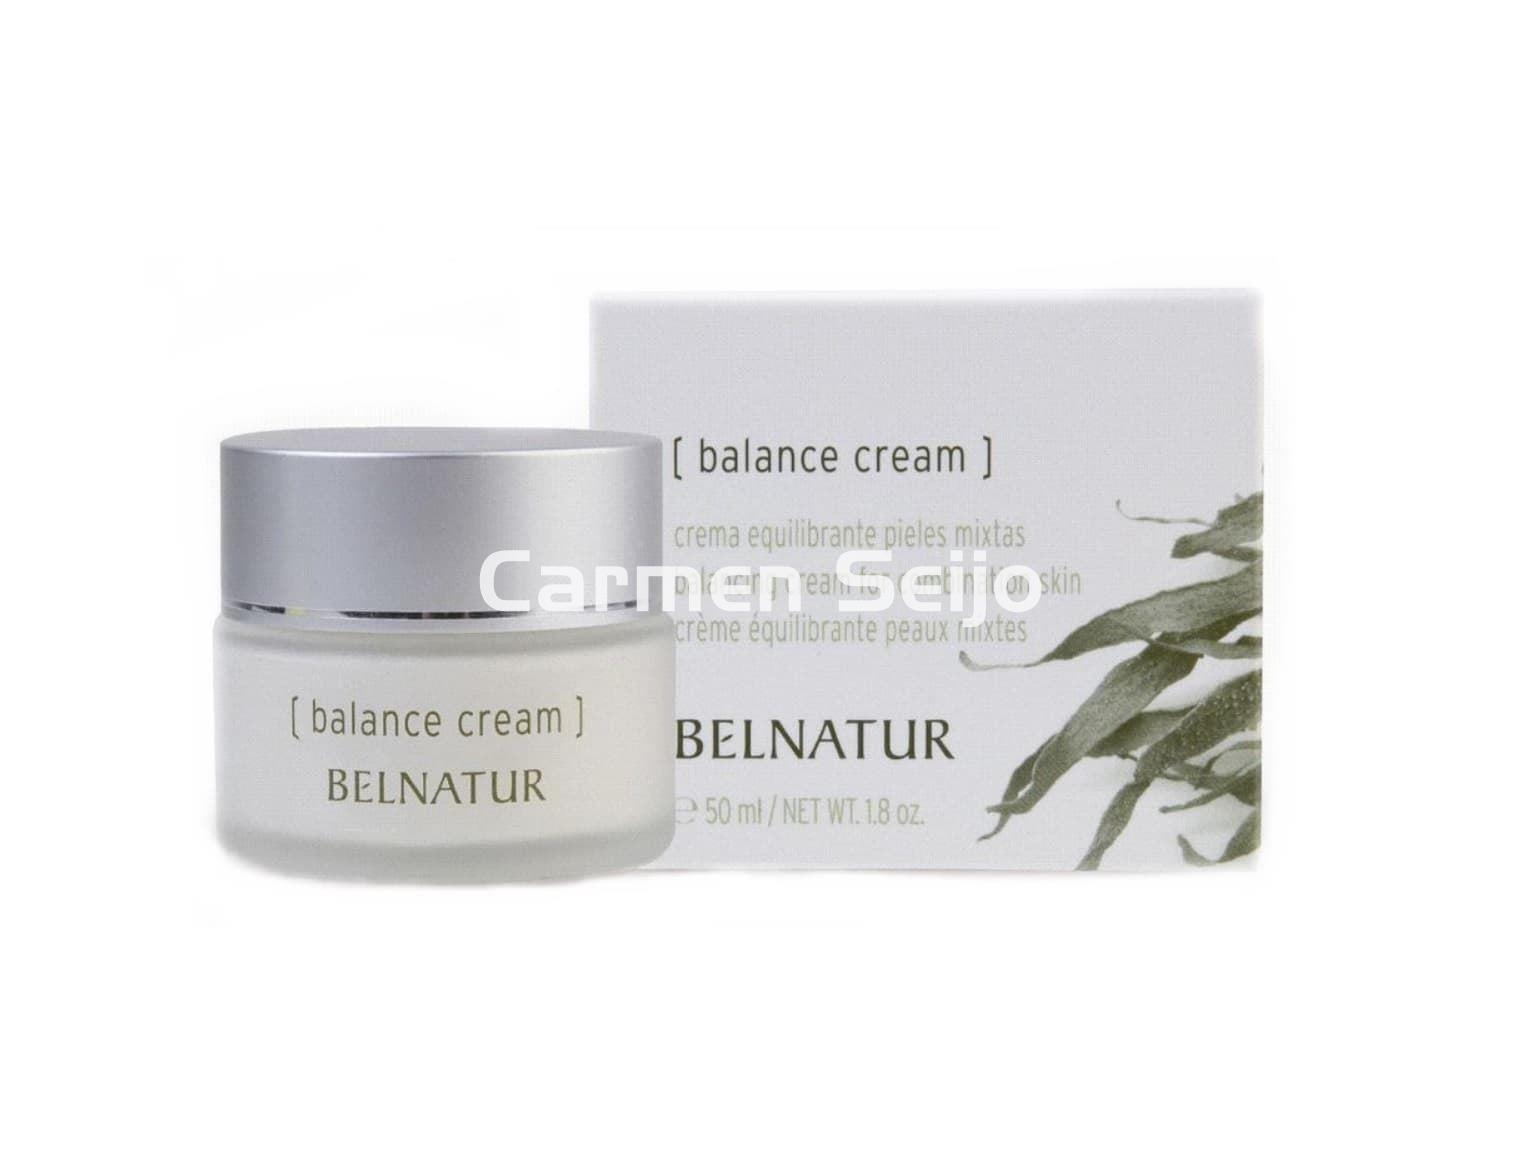 Belnatur Crema Balance Cream - Imagen 1